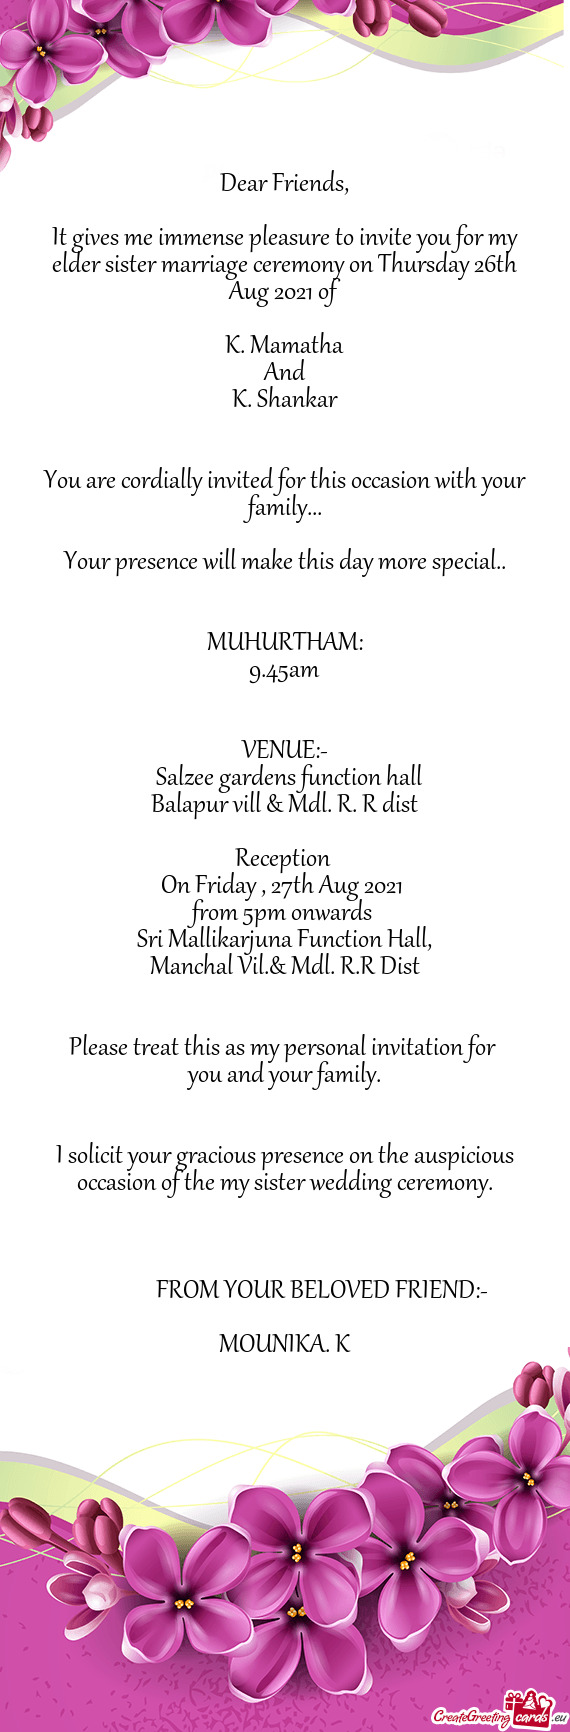 Sri Mallikarjuna Function Hall